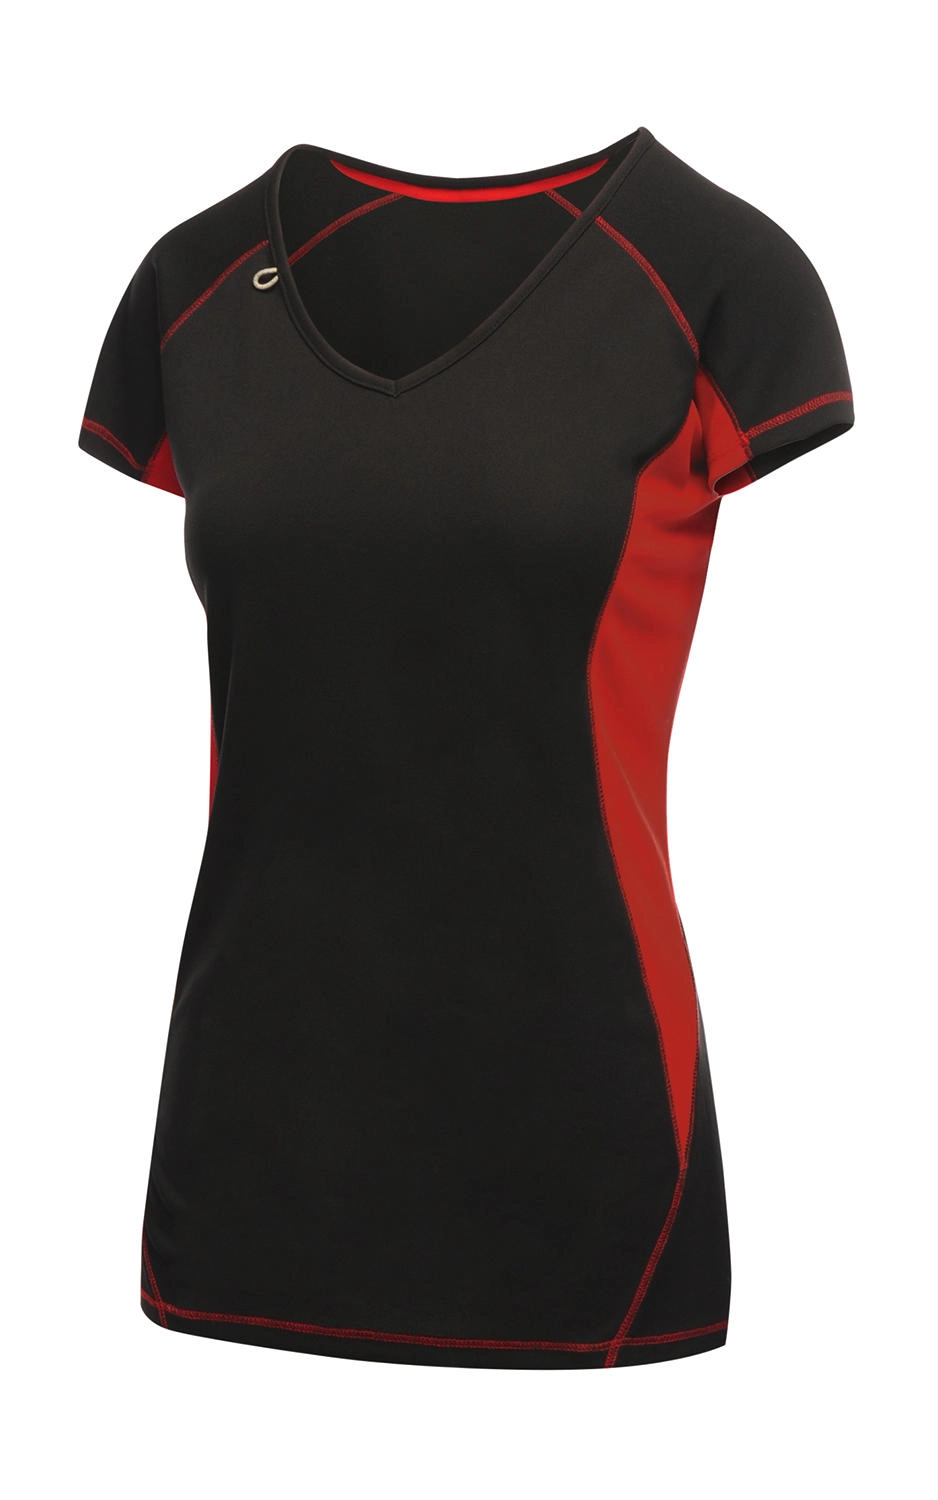 Ladies Beijing T-Shirt zum Besticken und Bedrucken in der Farbe Black/Classic Red mit Ihren Logo, Schriftzug oder Motiv.